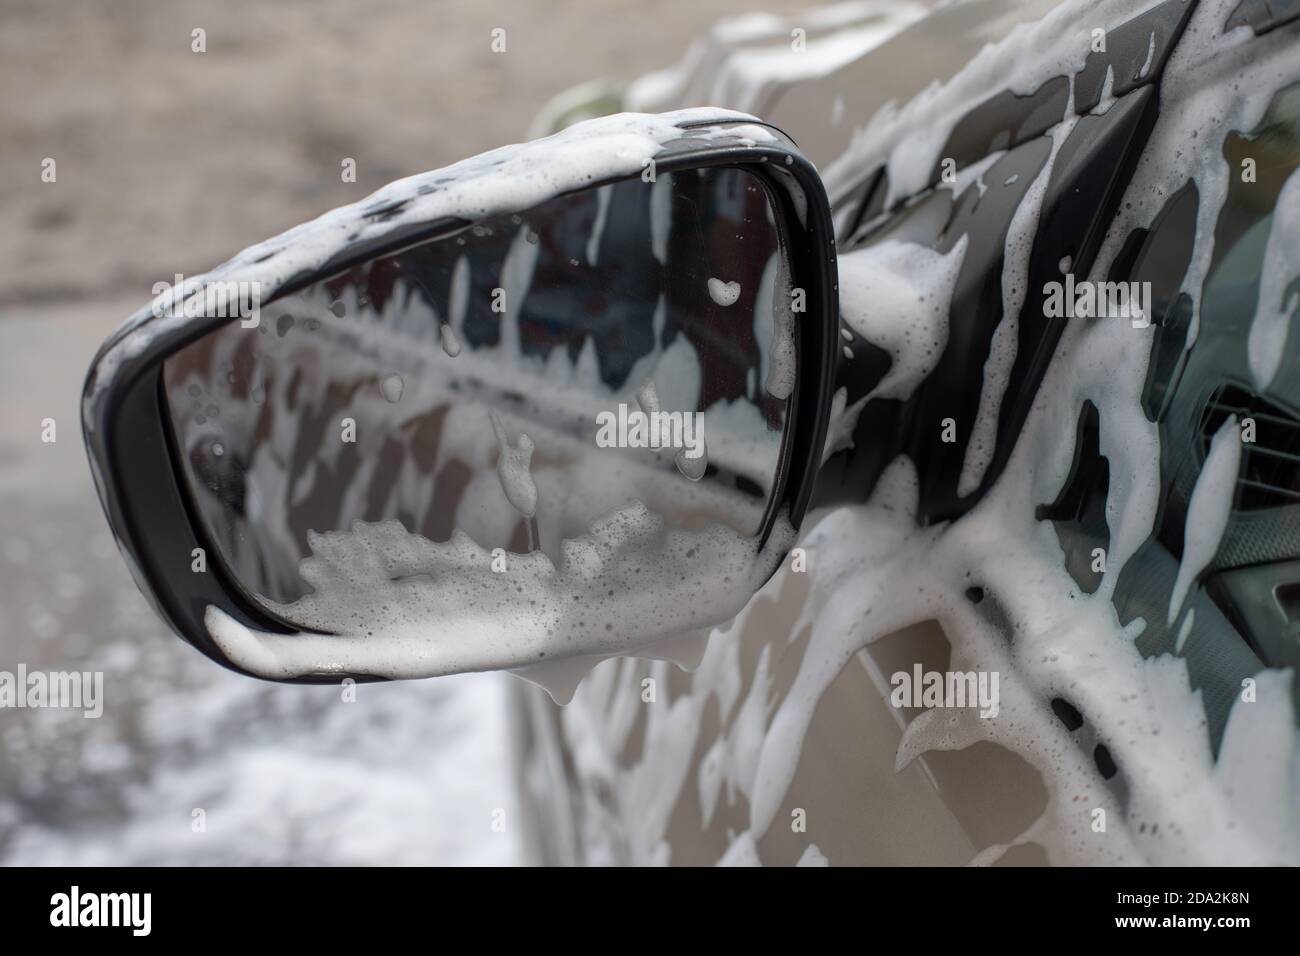 Miroir de voiture en mousse savonneuse lors d'un service de lavage de voiture. Auto-service nettoyage, photographie Banque D'Images